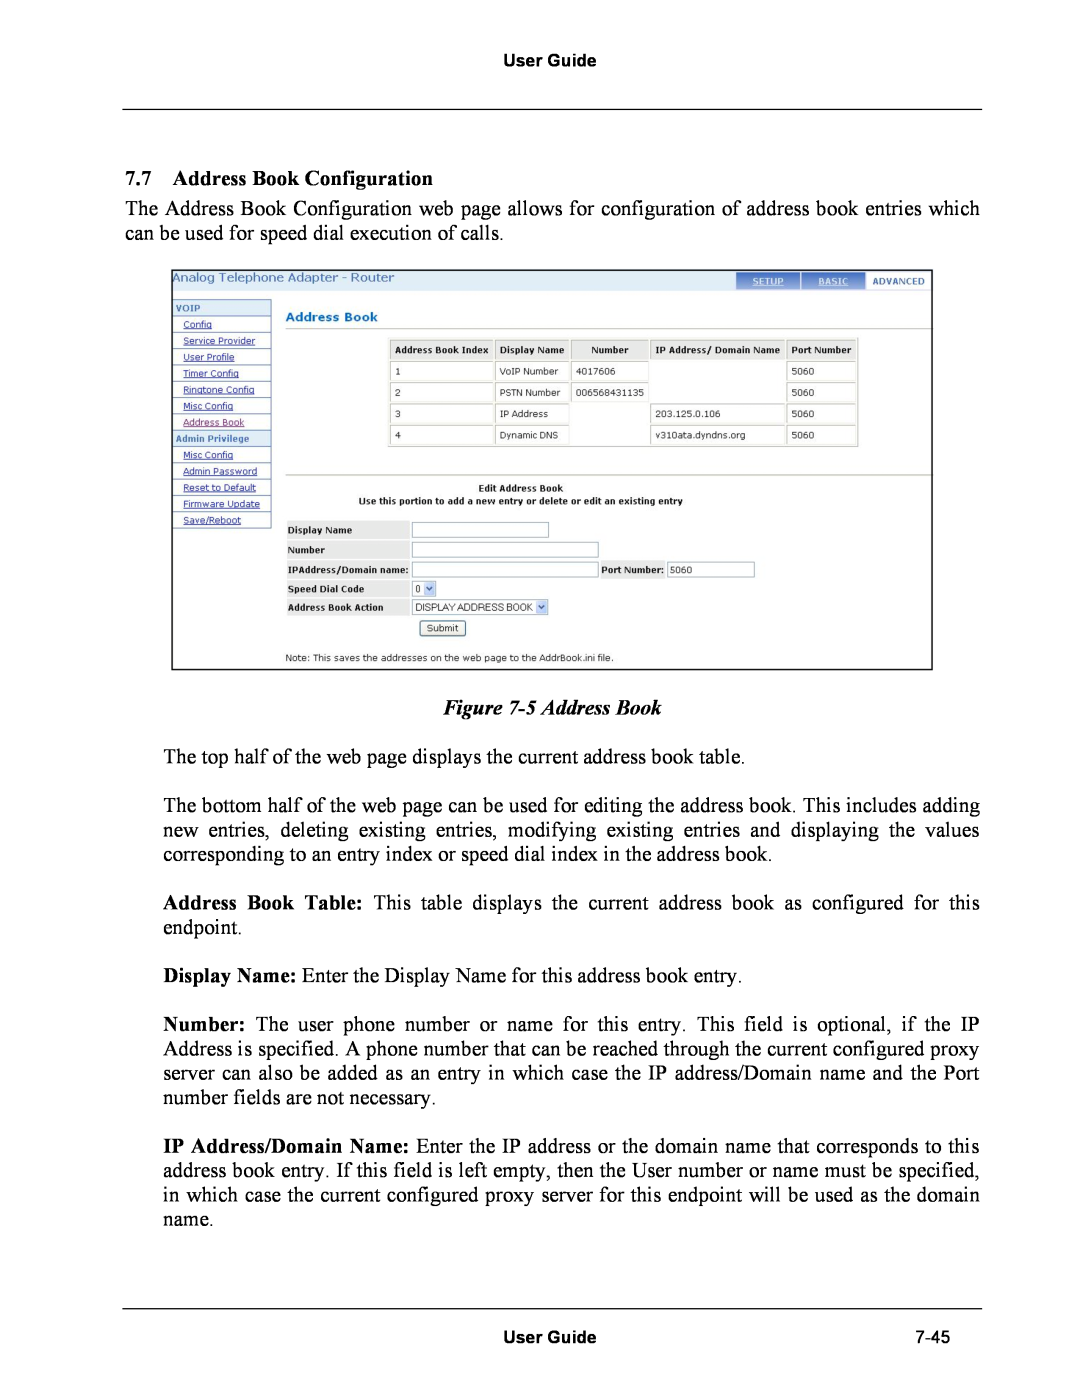 Netopia Network Adapater manual Address Book Configuration, 5 Address Book 